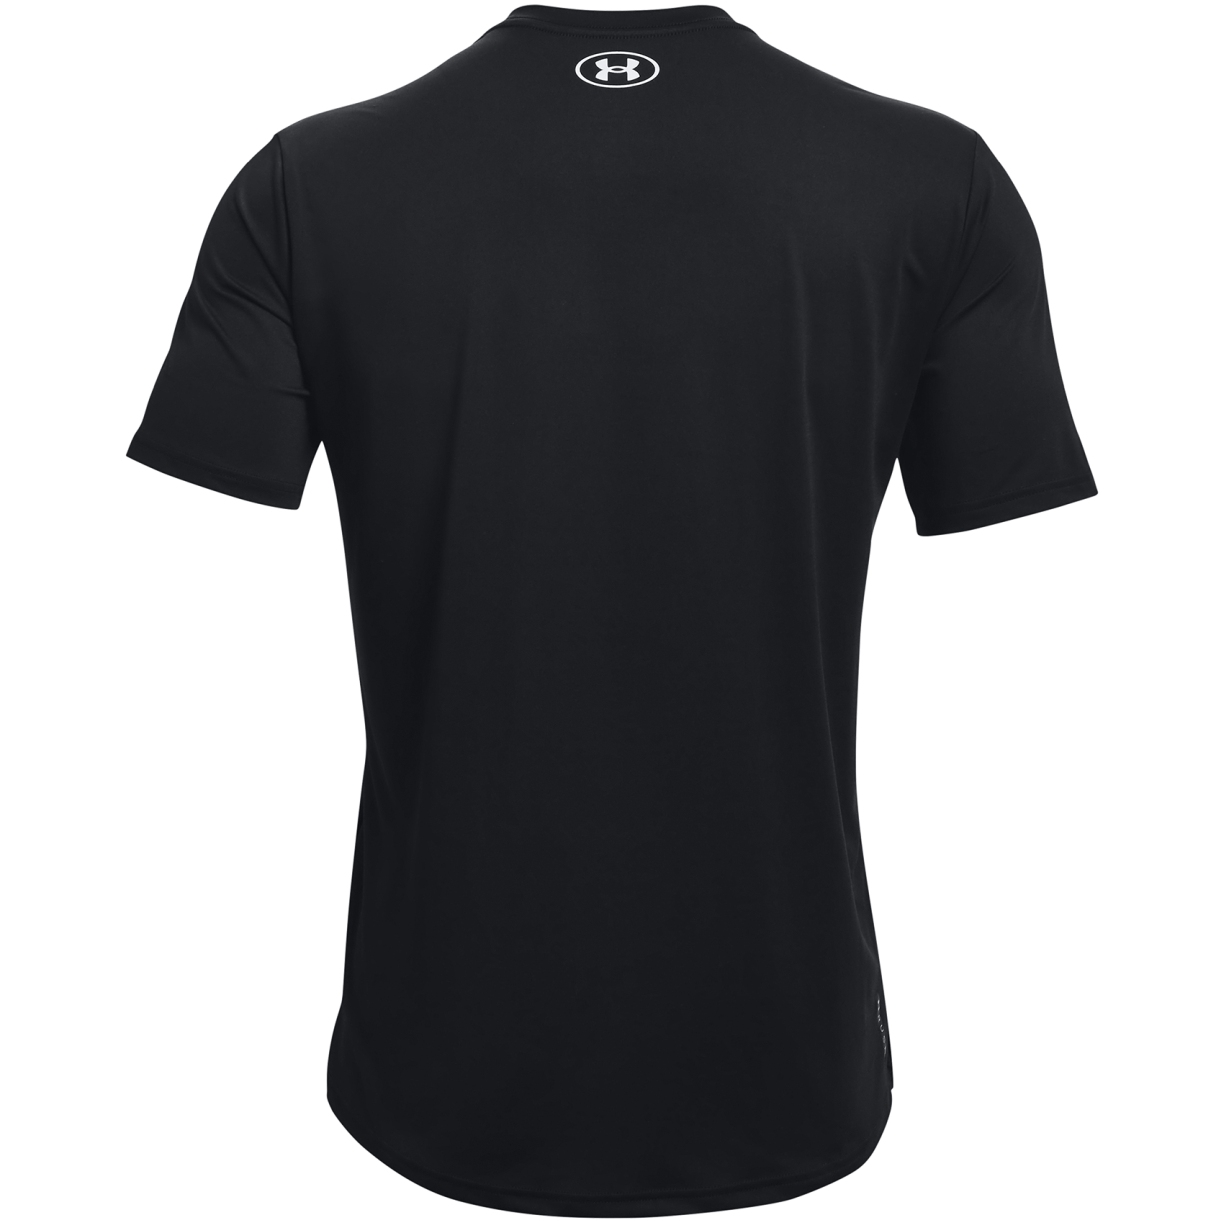 Under Armour UA RUSH™ Energy Short Sleeve Shirt Men - Black/White